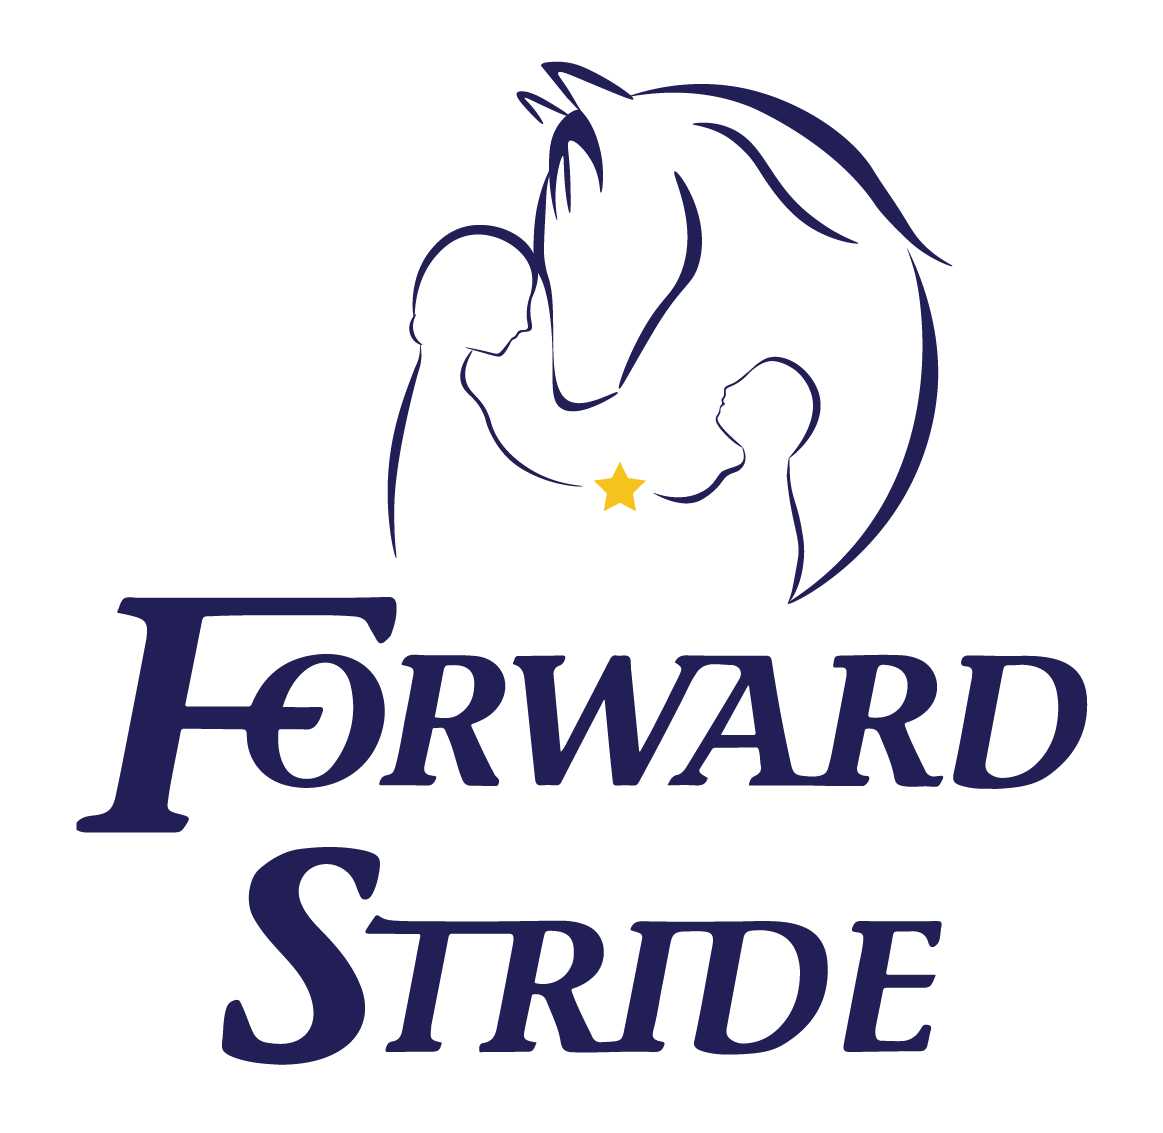 Forward Stride